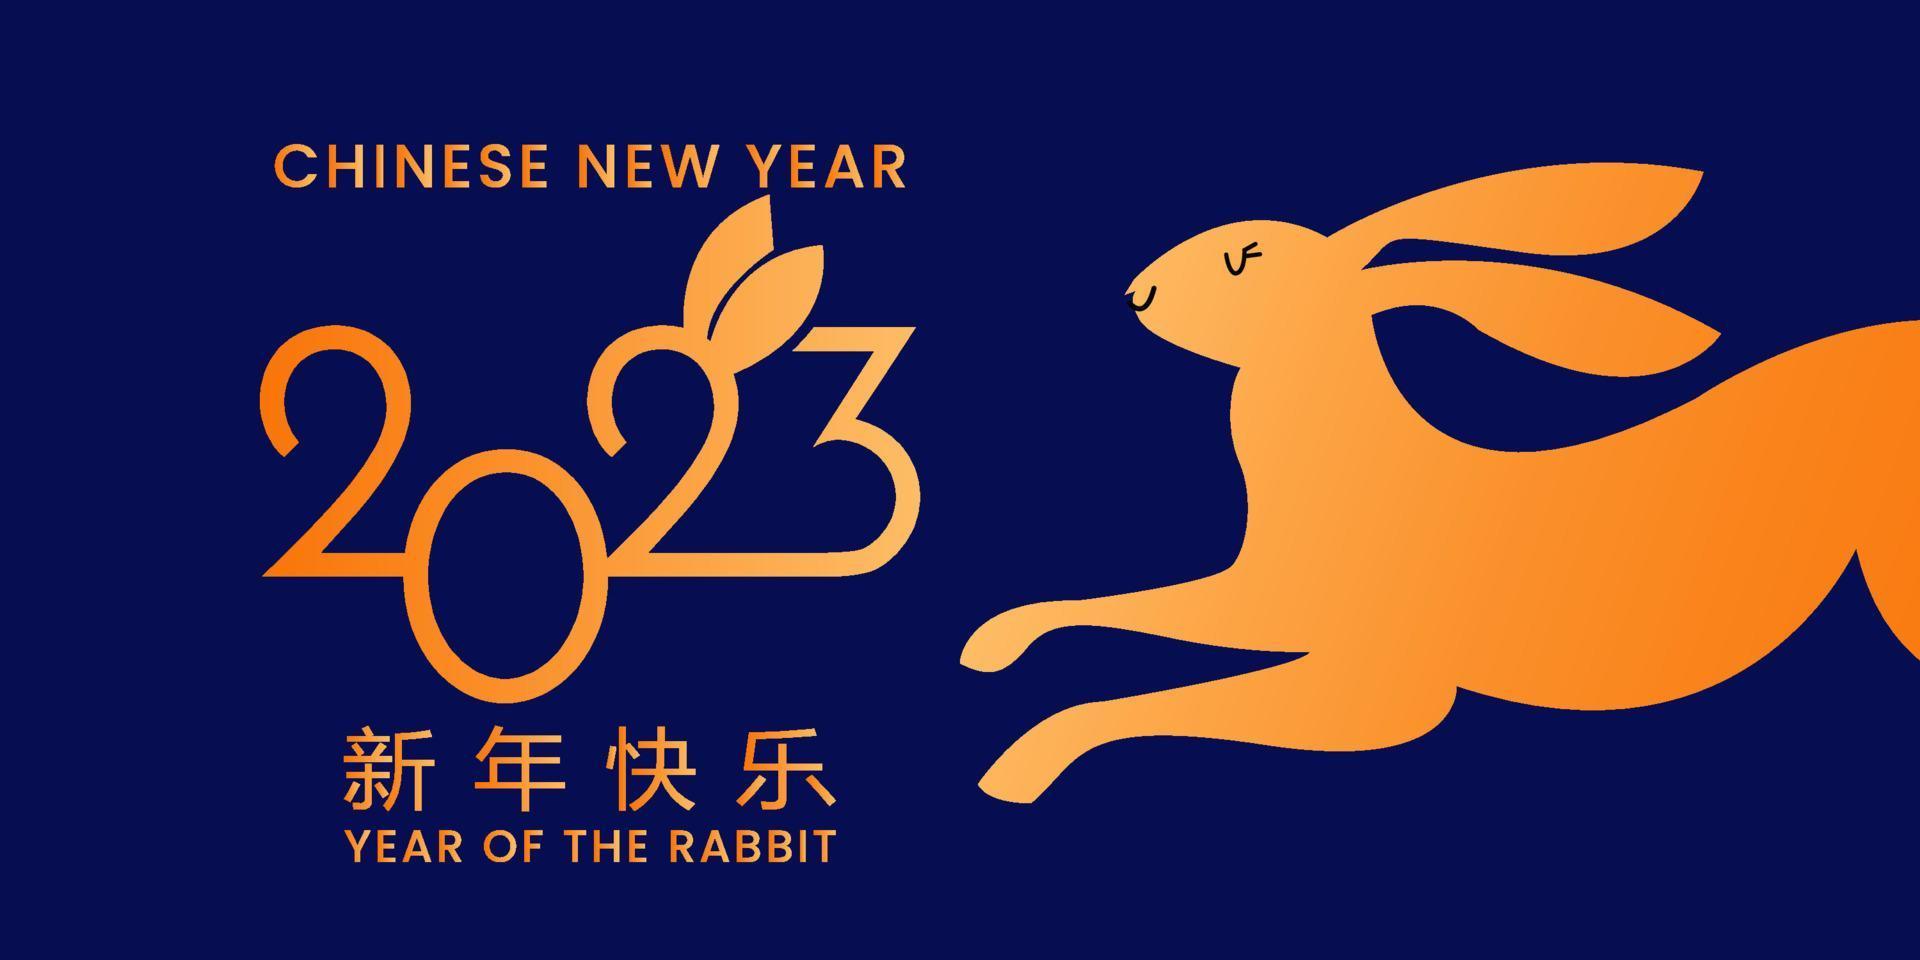 año nuevo chino 2023 año del conejo - símbolo del zodiaco chino, concepto de año nuevo lunar, diseño de fondo moderno azul y dorado vector